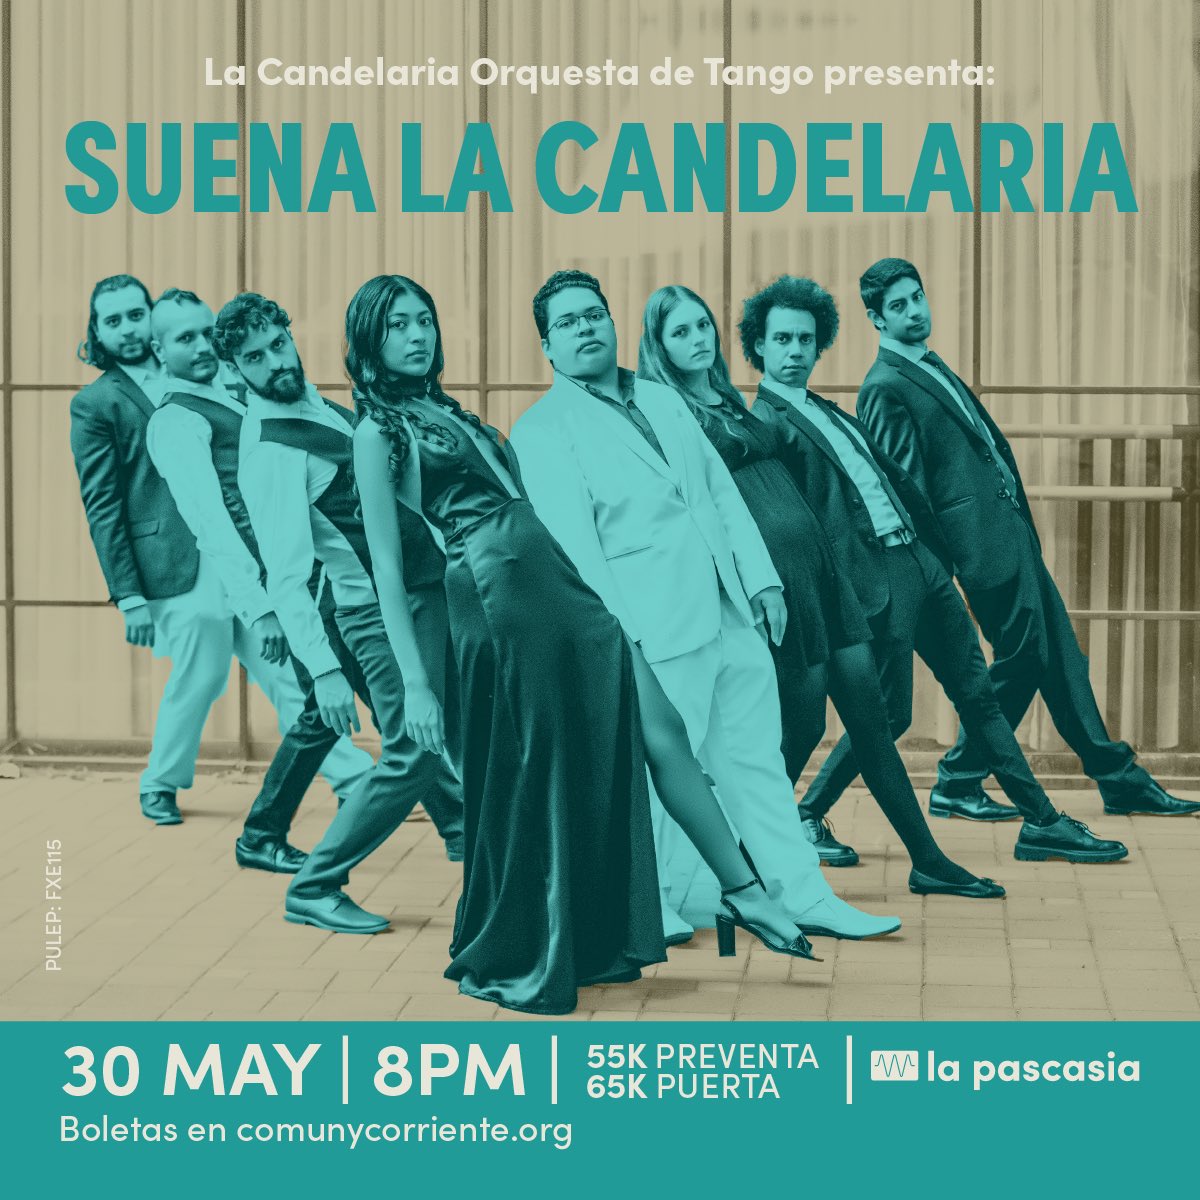 ¡Tango en #LaPascasia con #OrquestaLaCandelaria! SUENA LA CANDELARIA, mayo 30 en el edificio. Boletas a la venta en el siguiente enlace: comunycorriente.mitiendanube.com/productos/la-c…